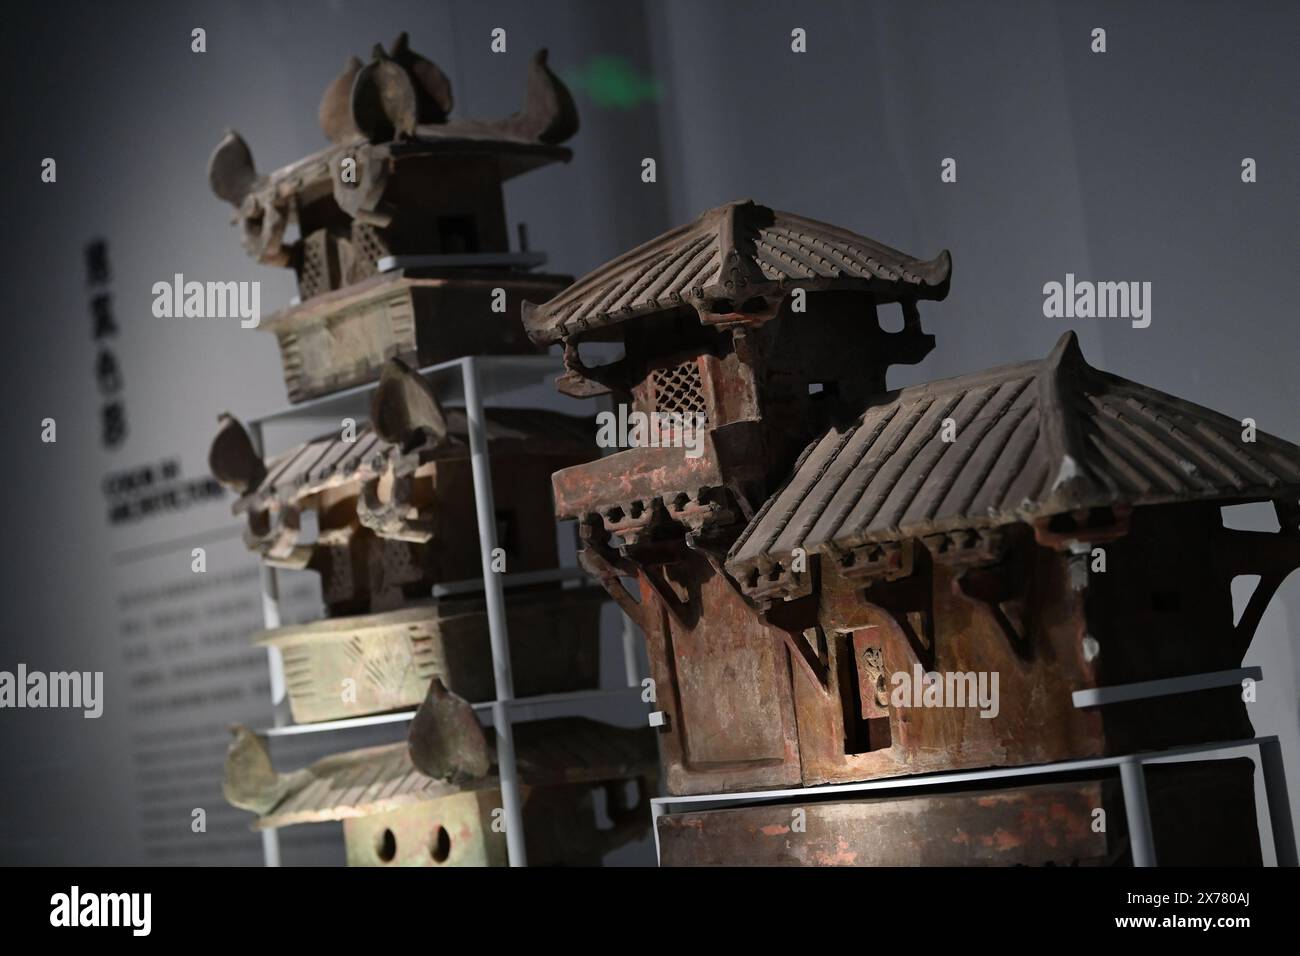 (240518) -- XI'AN, 18 mai 2024 (Xinhua) -- Une tour de poterie est photographiée au Musée Qin Han du Musée d'histoire du Shaanxi à Xi'an, capitale de la province du Shaanxi, au nord-ouest de la Chine, le 18 mai 2024. Un nouveau musée consacré à l'ancienne civilisation chinoise de la dynastie Qin (221 av. J.-C.-207 av. J.-C.) et de la dynastie Han (202 av. J.-C.-220) a officiellement ouvert ses portes au public samedi dans la province du Shaanxi, au nord-ouest de la Chine. Le Musée Qin han du Musée d'histoire du Shaanxi, une filiale du Musée d'histoire du Shaanxi, est le premier musée en Chine qui offre aux visiteurs une vue panoramique sur l'origine, le développement et Banque D'Images